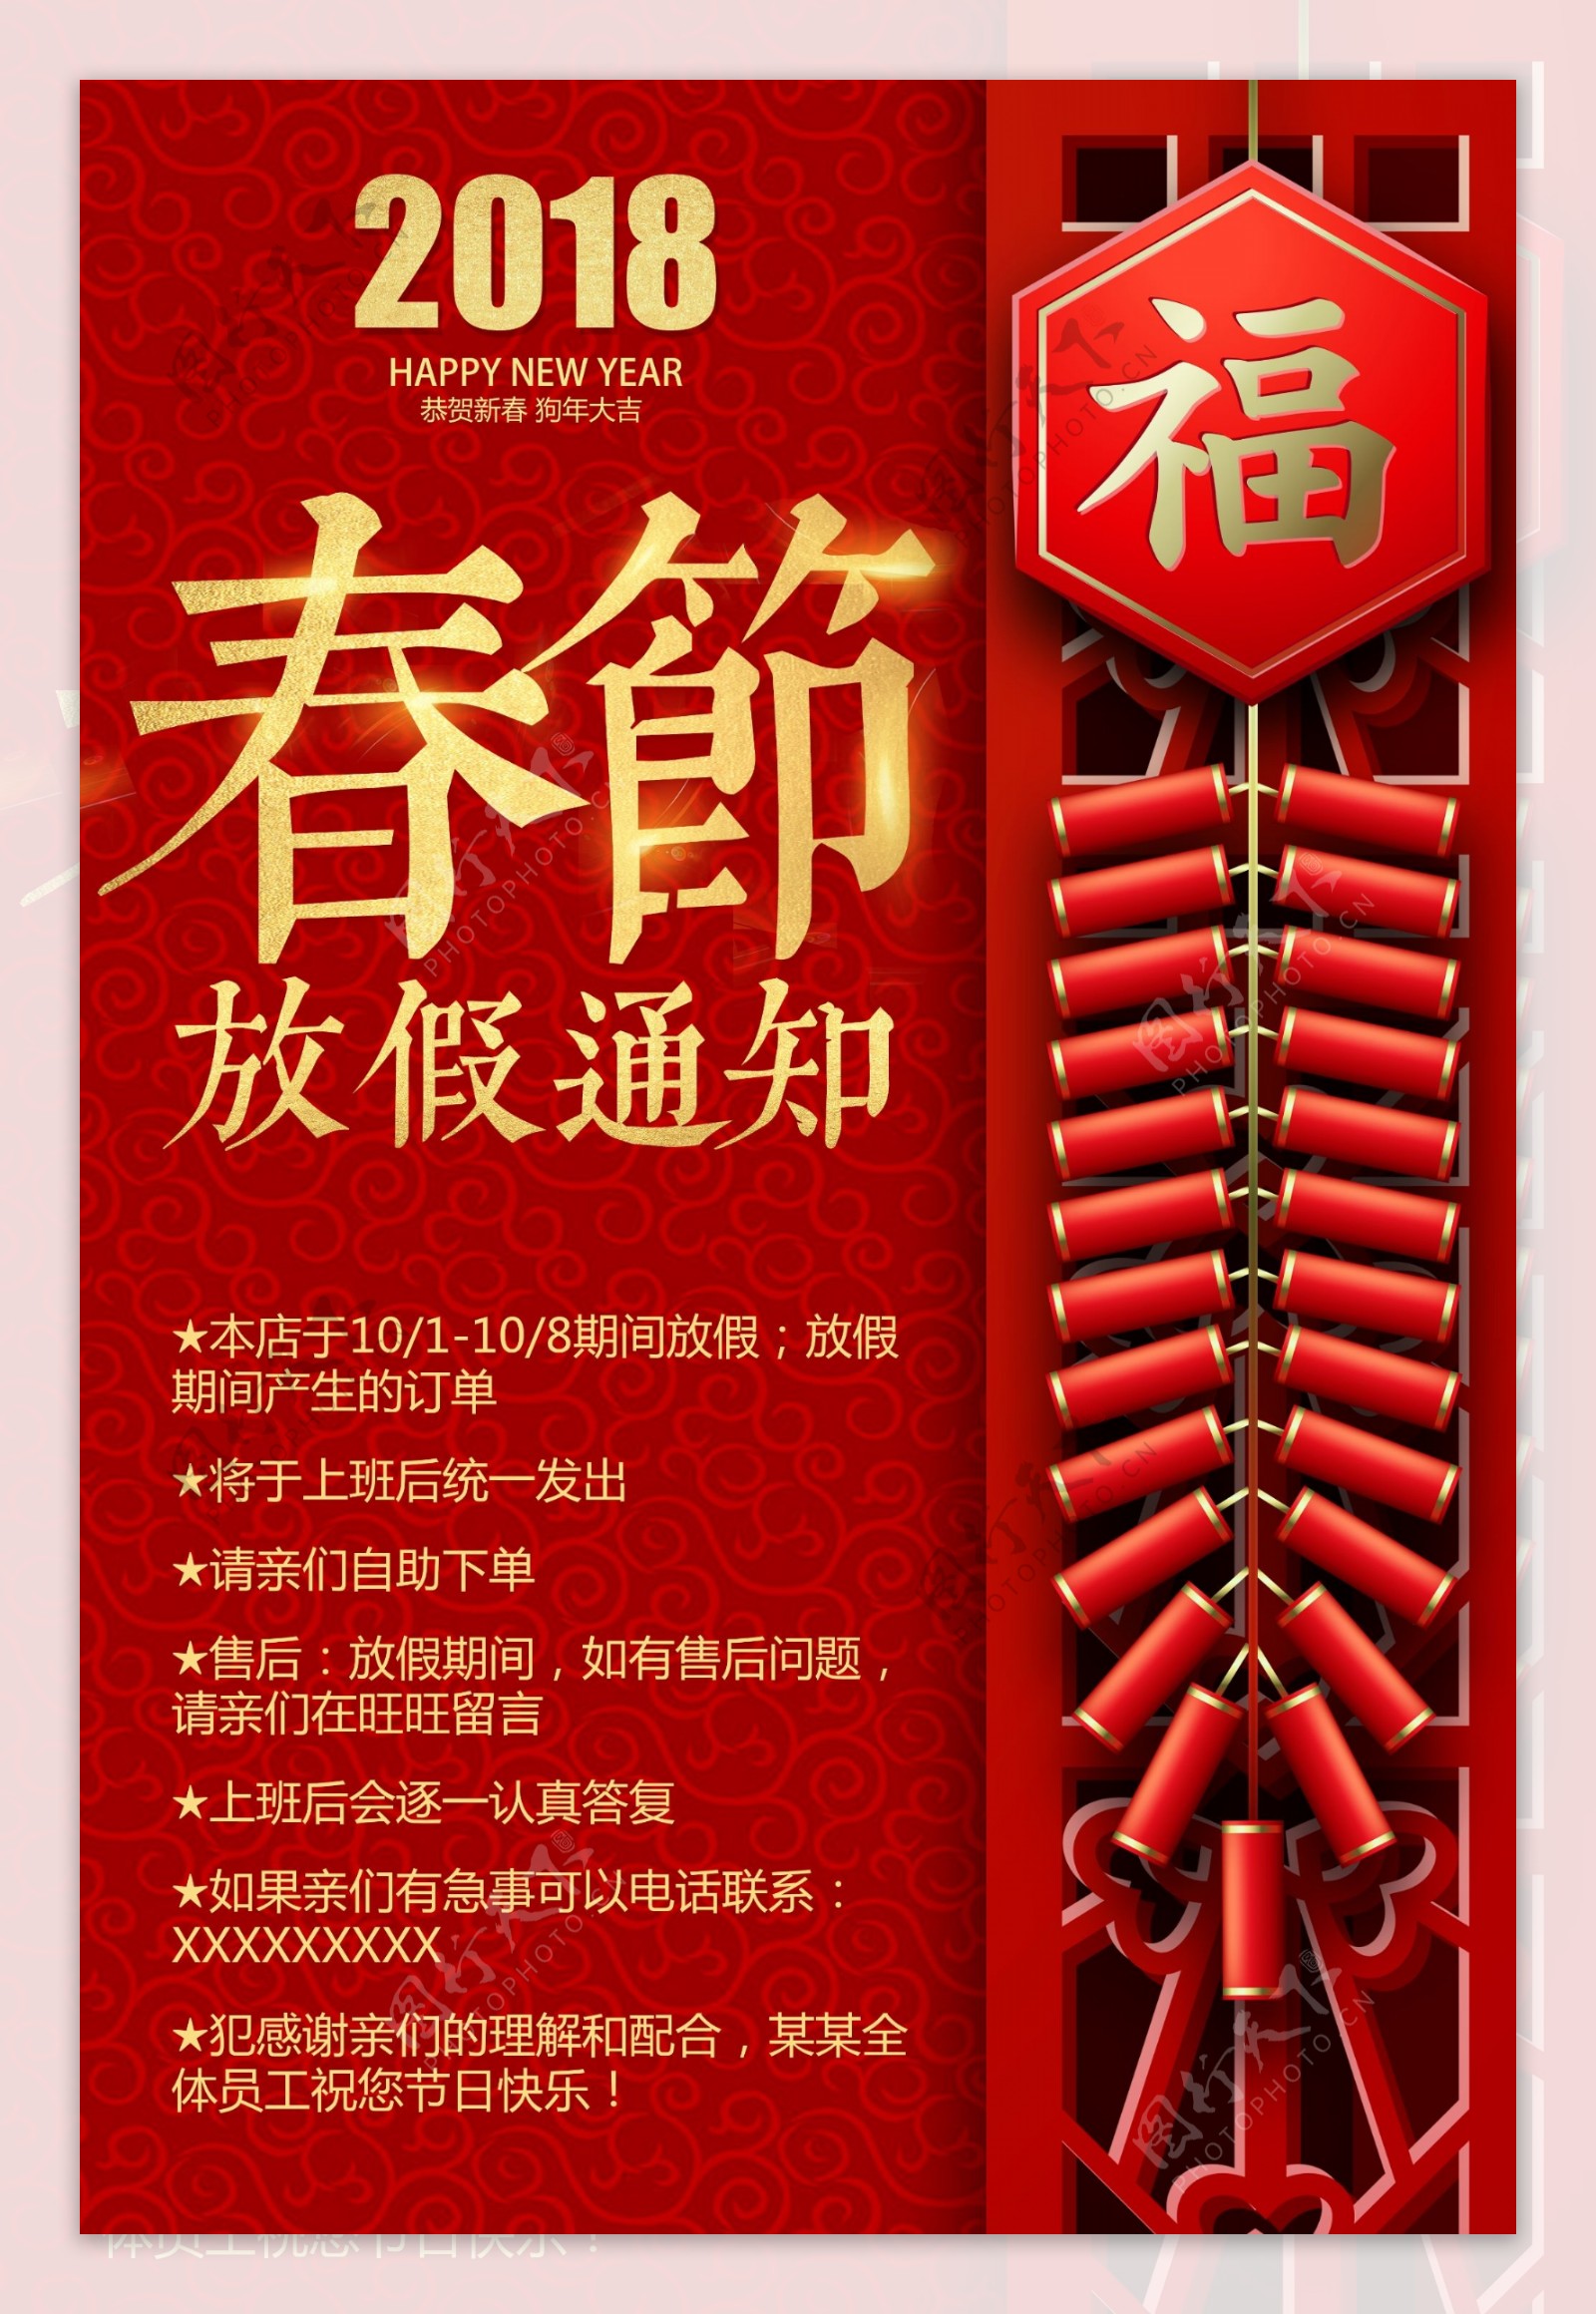 中国风背景春节放假通知海报模板设计